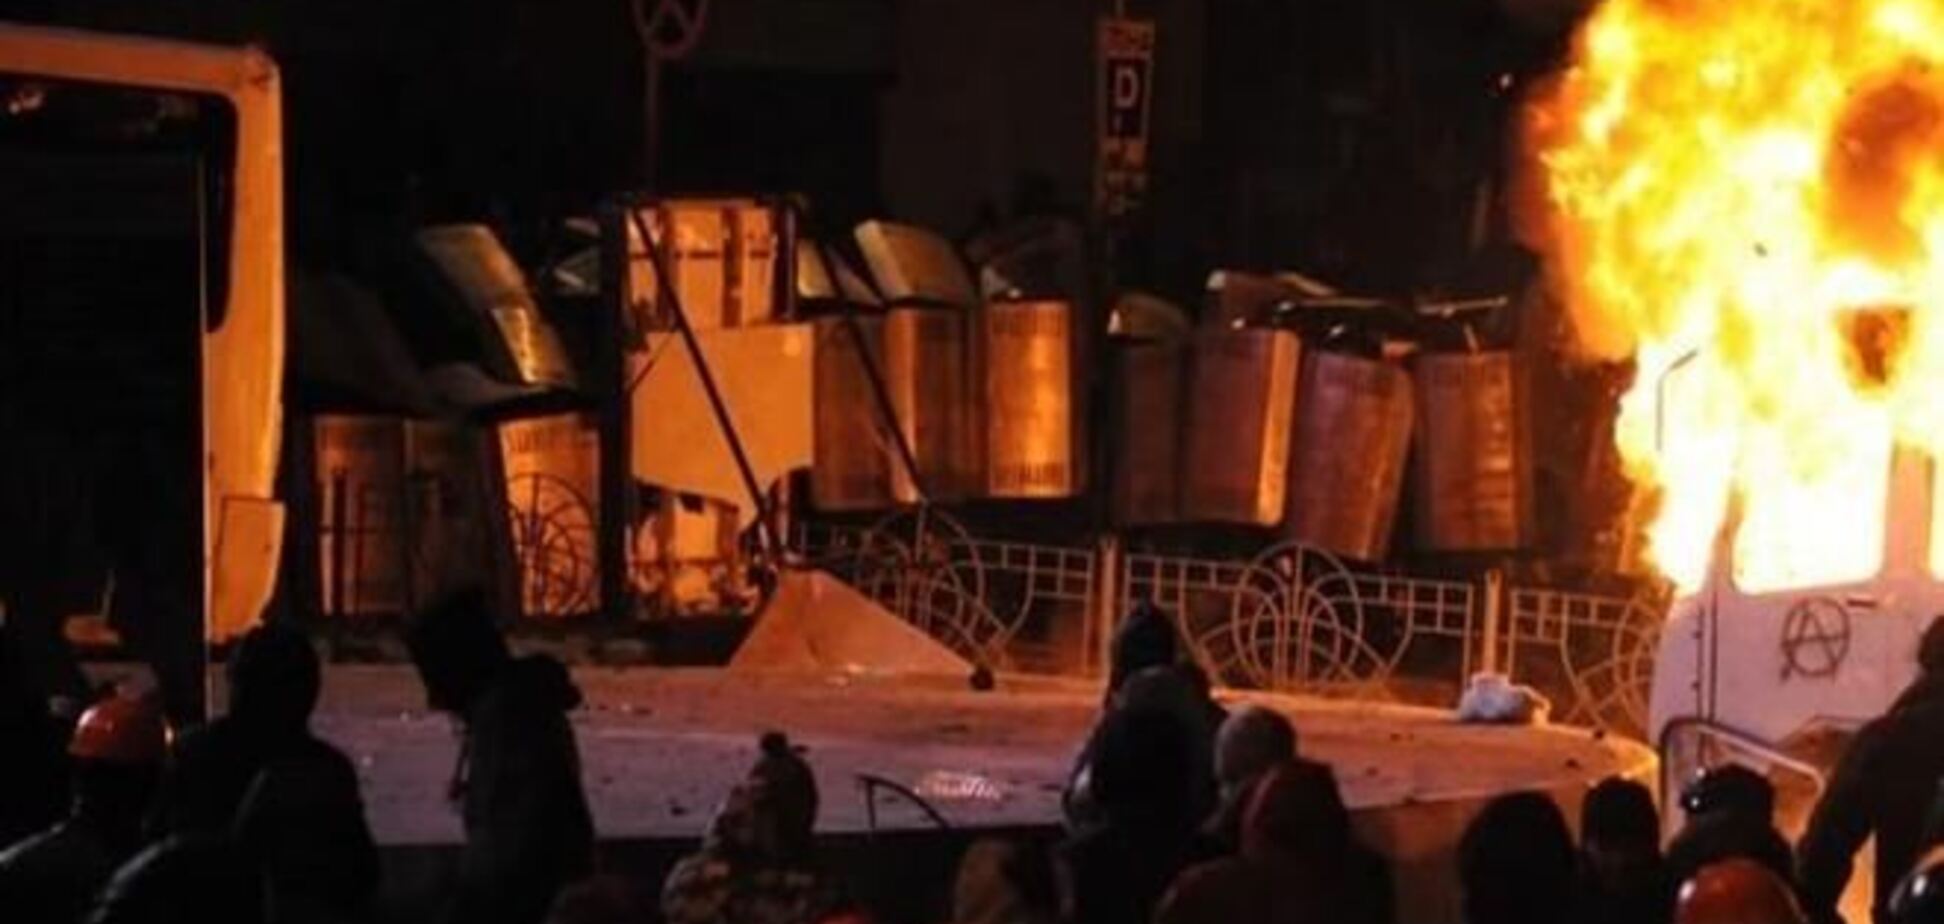 Регионал: события в центре Киева спровоцировали лидеры оппозиции